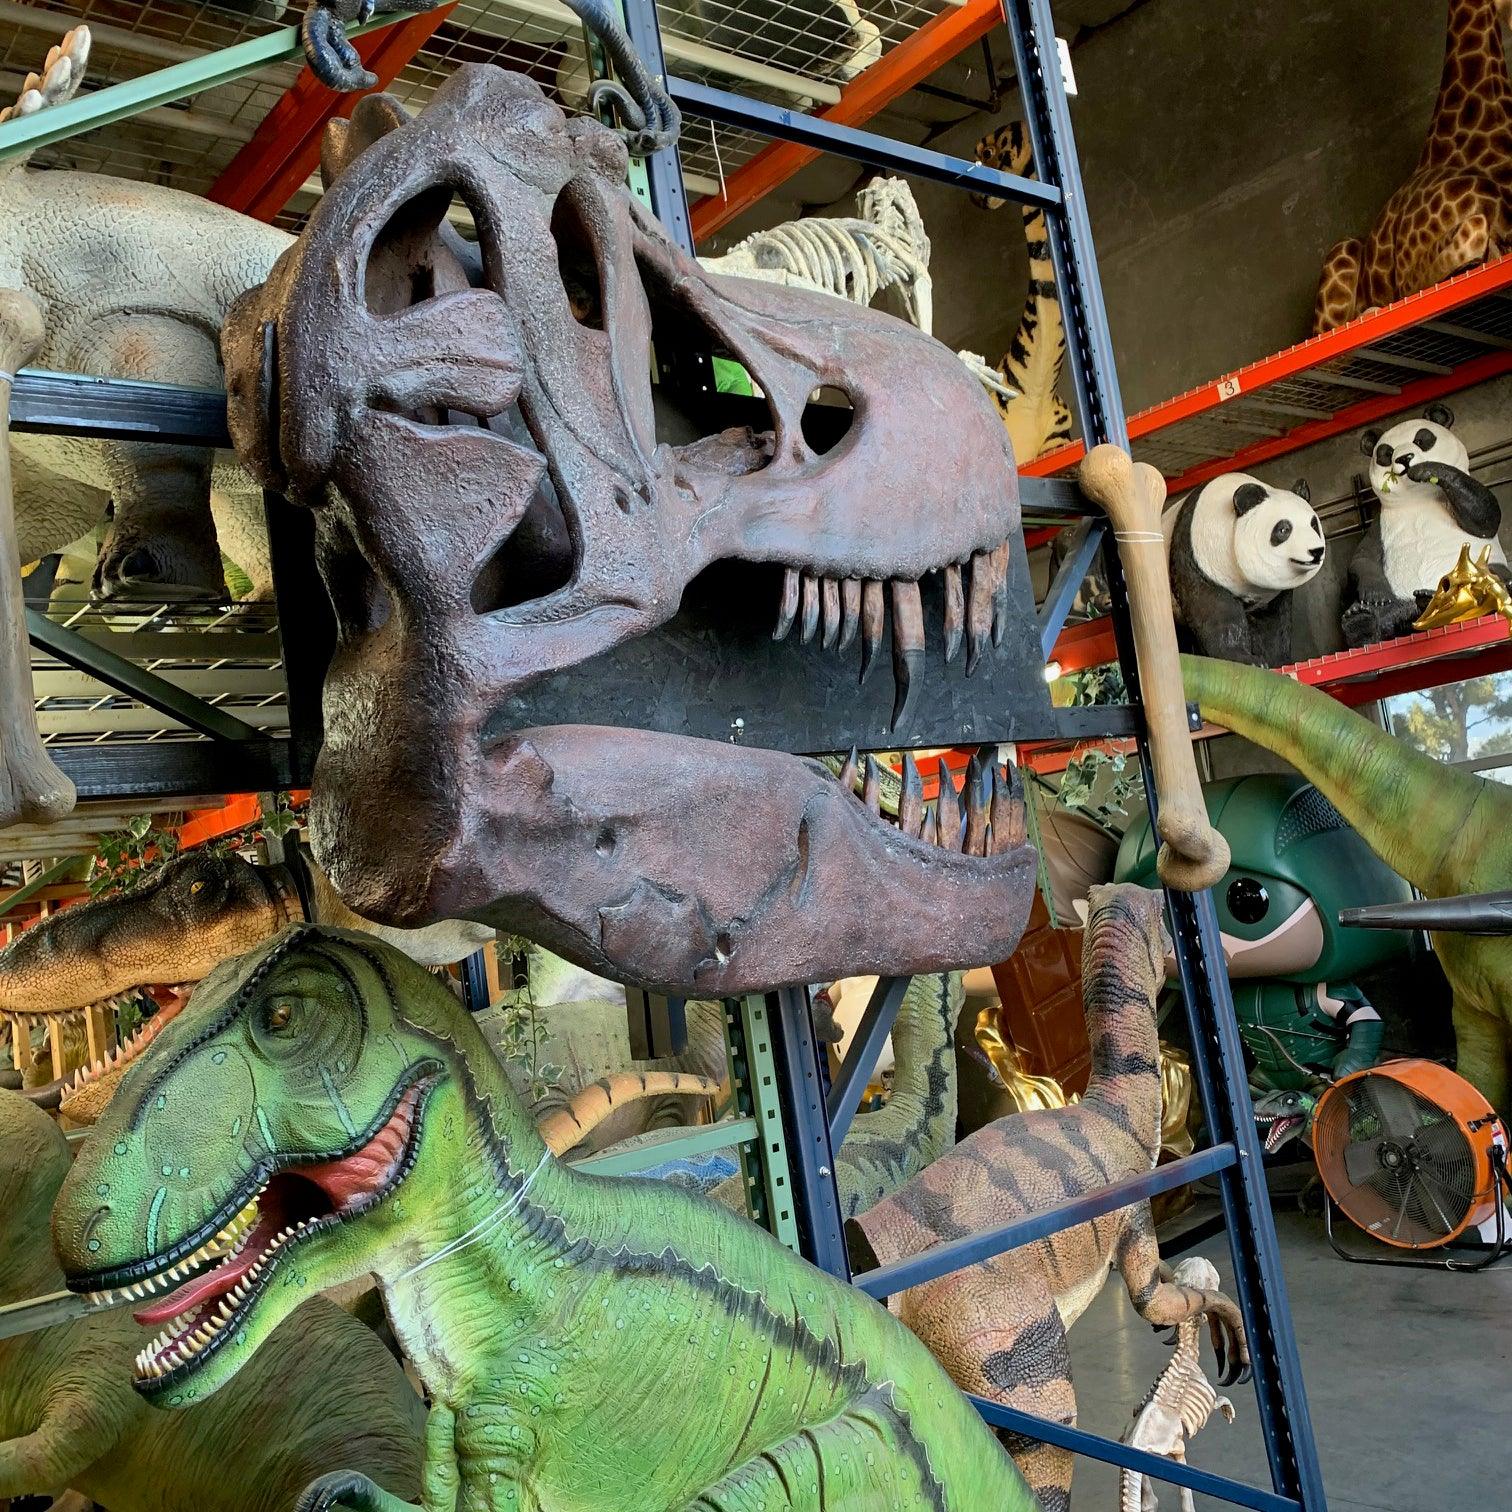 T-Rex Skull Wall Decor Statue - LM Treasures Prop Rentals 